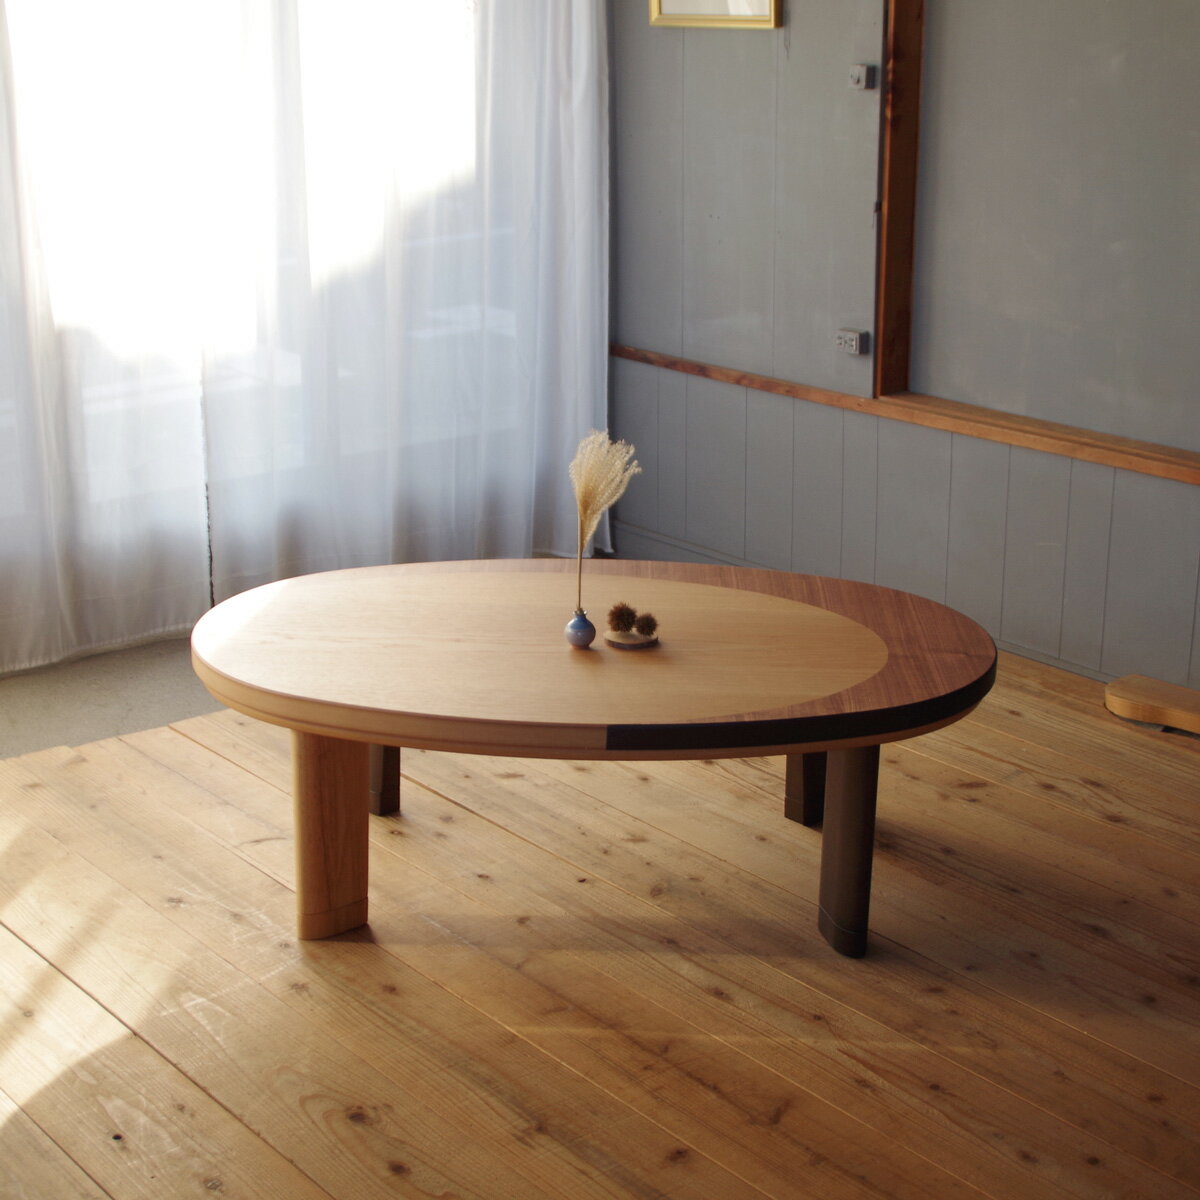 楽天setomarcheMOON LIGHTこたつ 楕円形 テーブル 150×90ナラ / ウォールナット|北欧|和風|モダン|シンプル|デザイン||おしゃれ|かわいい||円卓|座卓|ちゃぶ台||ローテーブル|センターテーブル||日本製|国産|